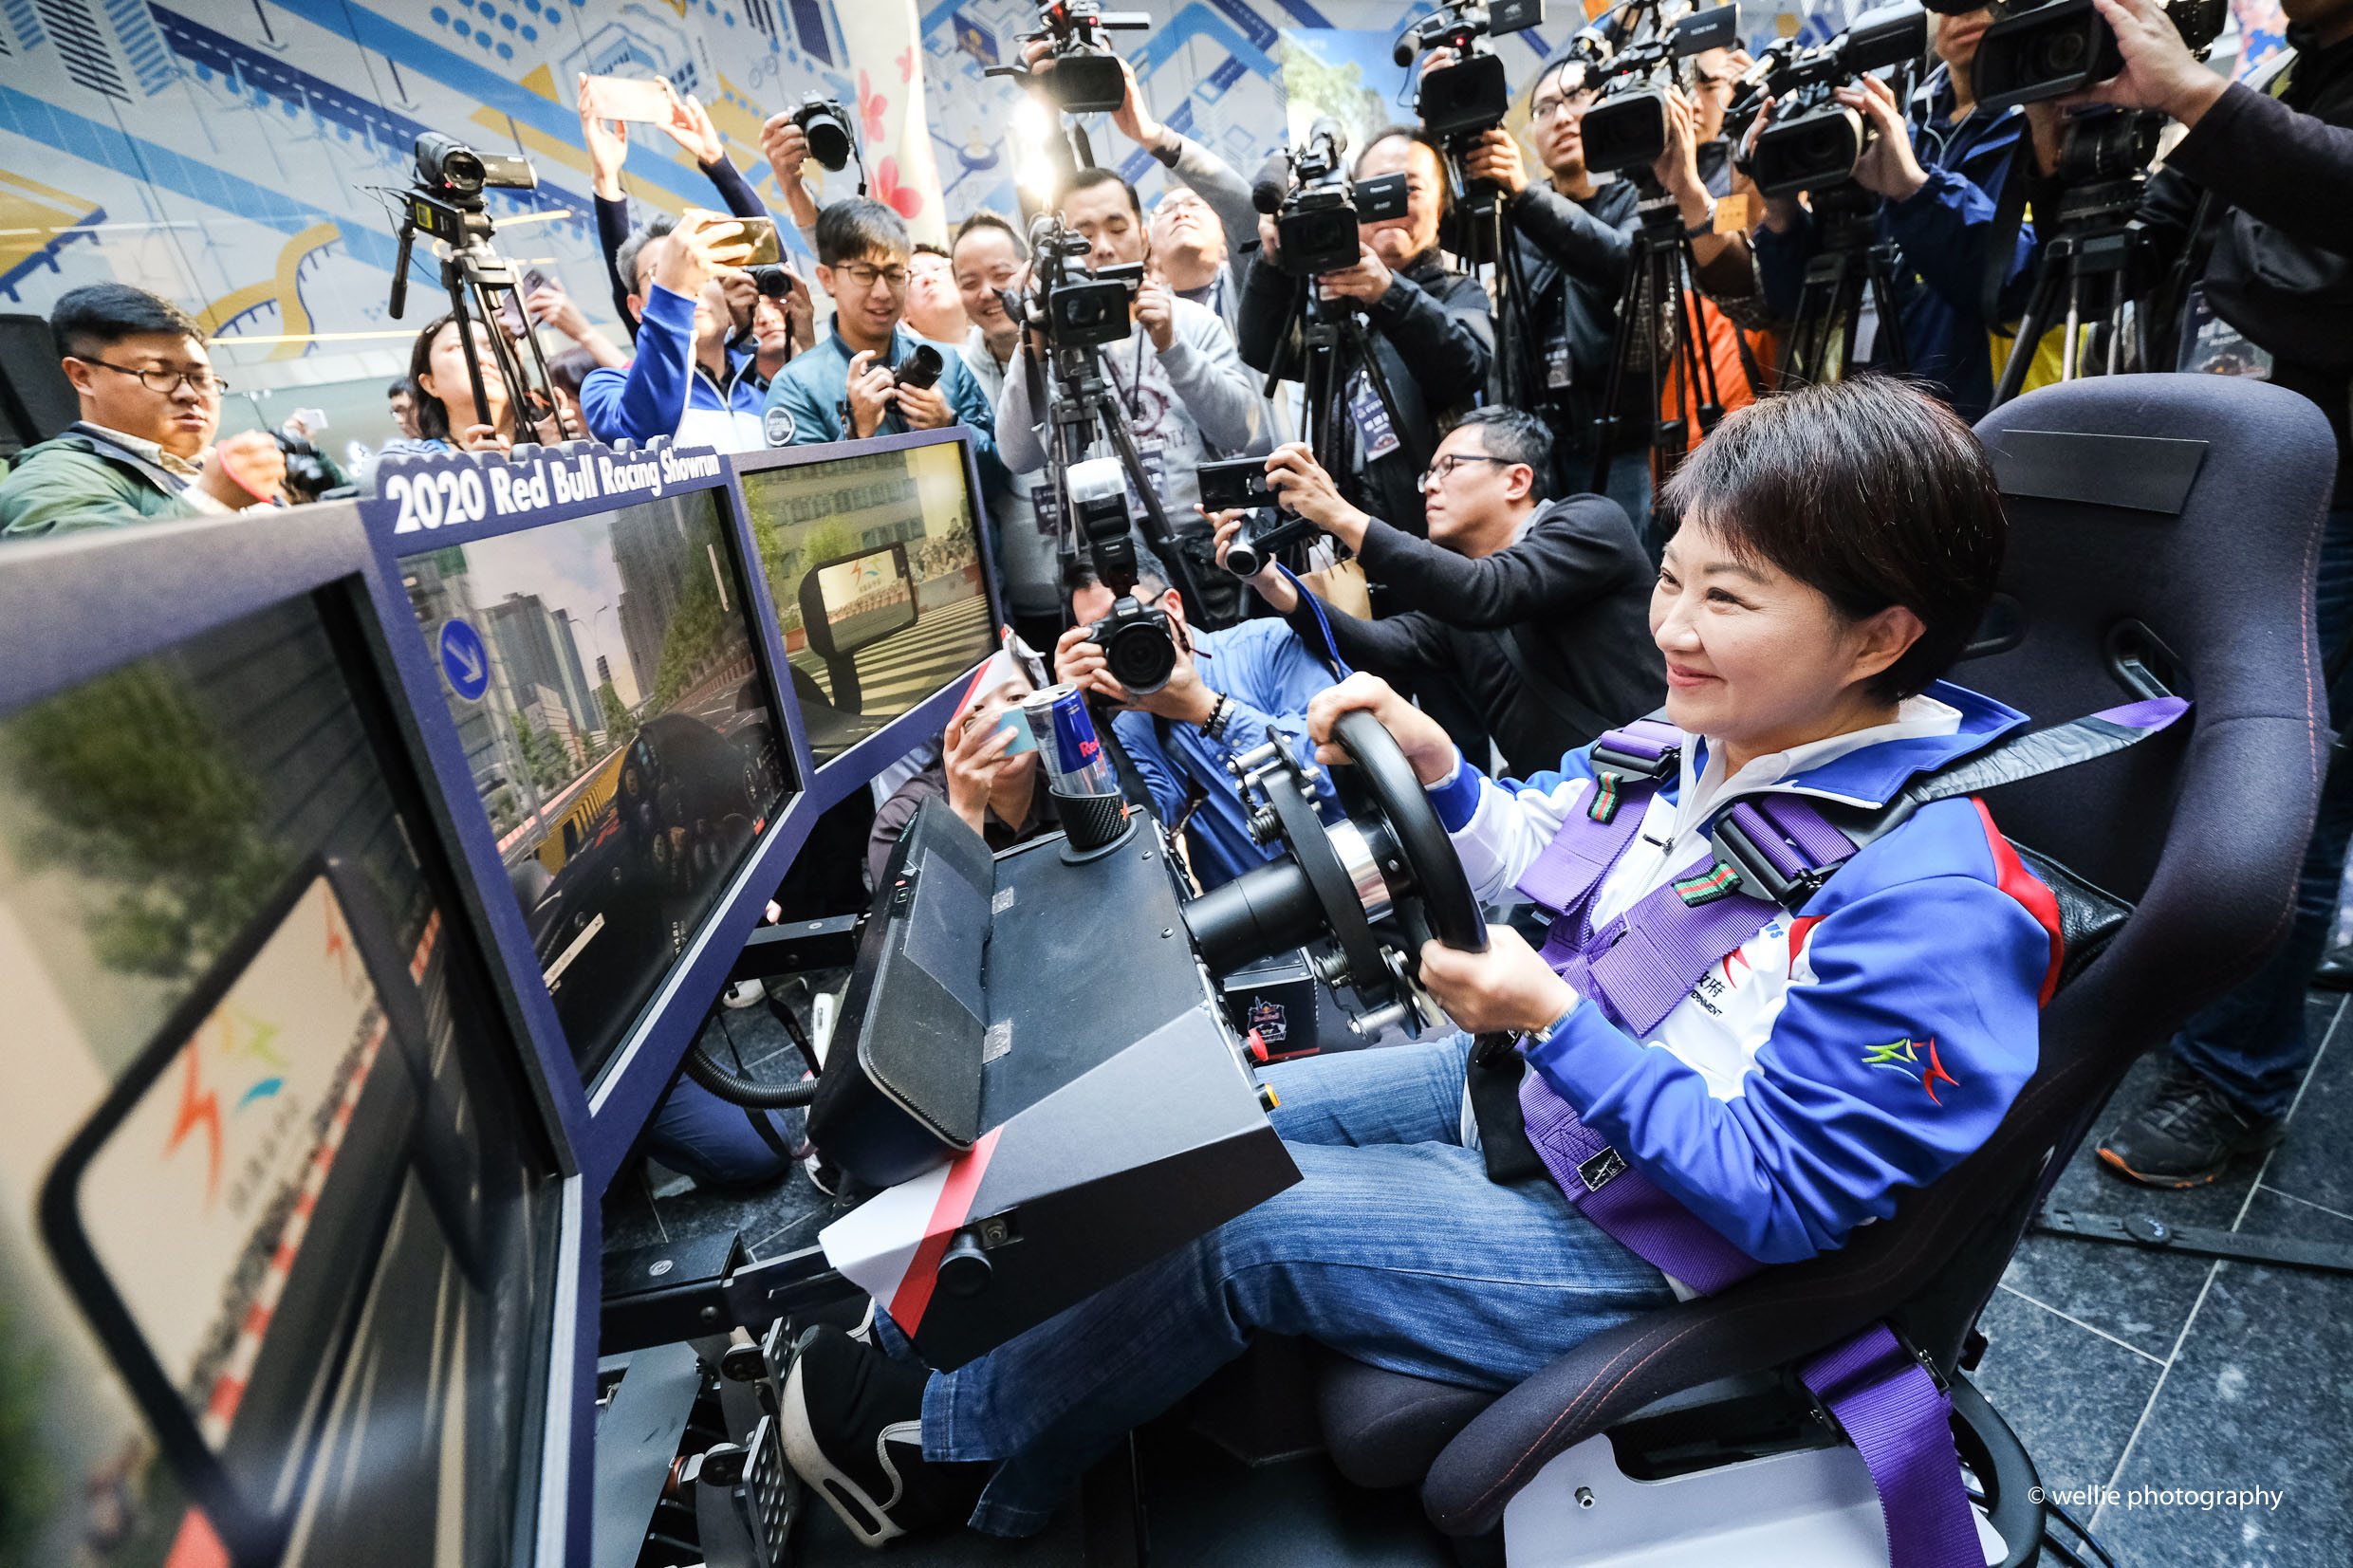 臺中市市長 盧秀燕於今享受 Racing Showrun 帶來的視覺衝擊。